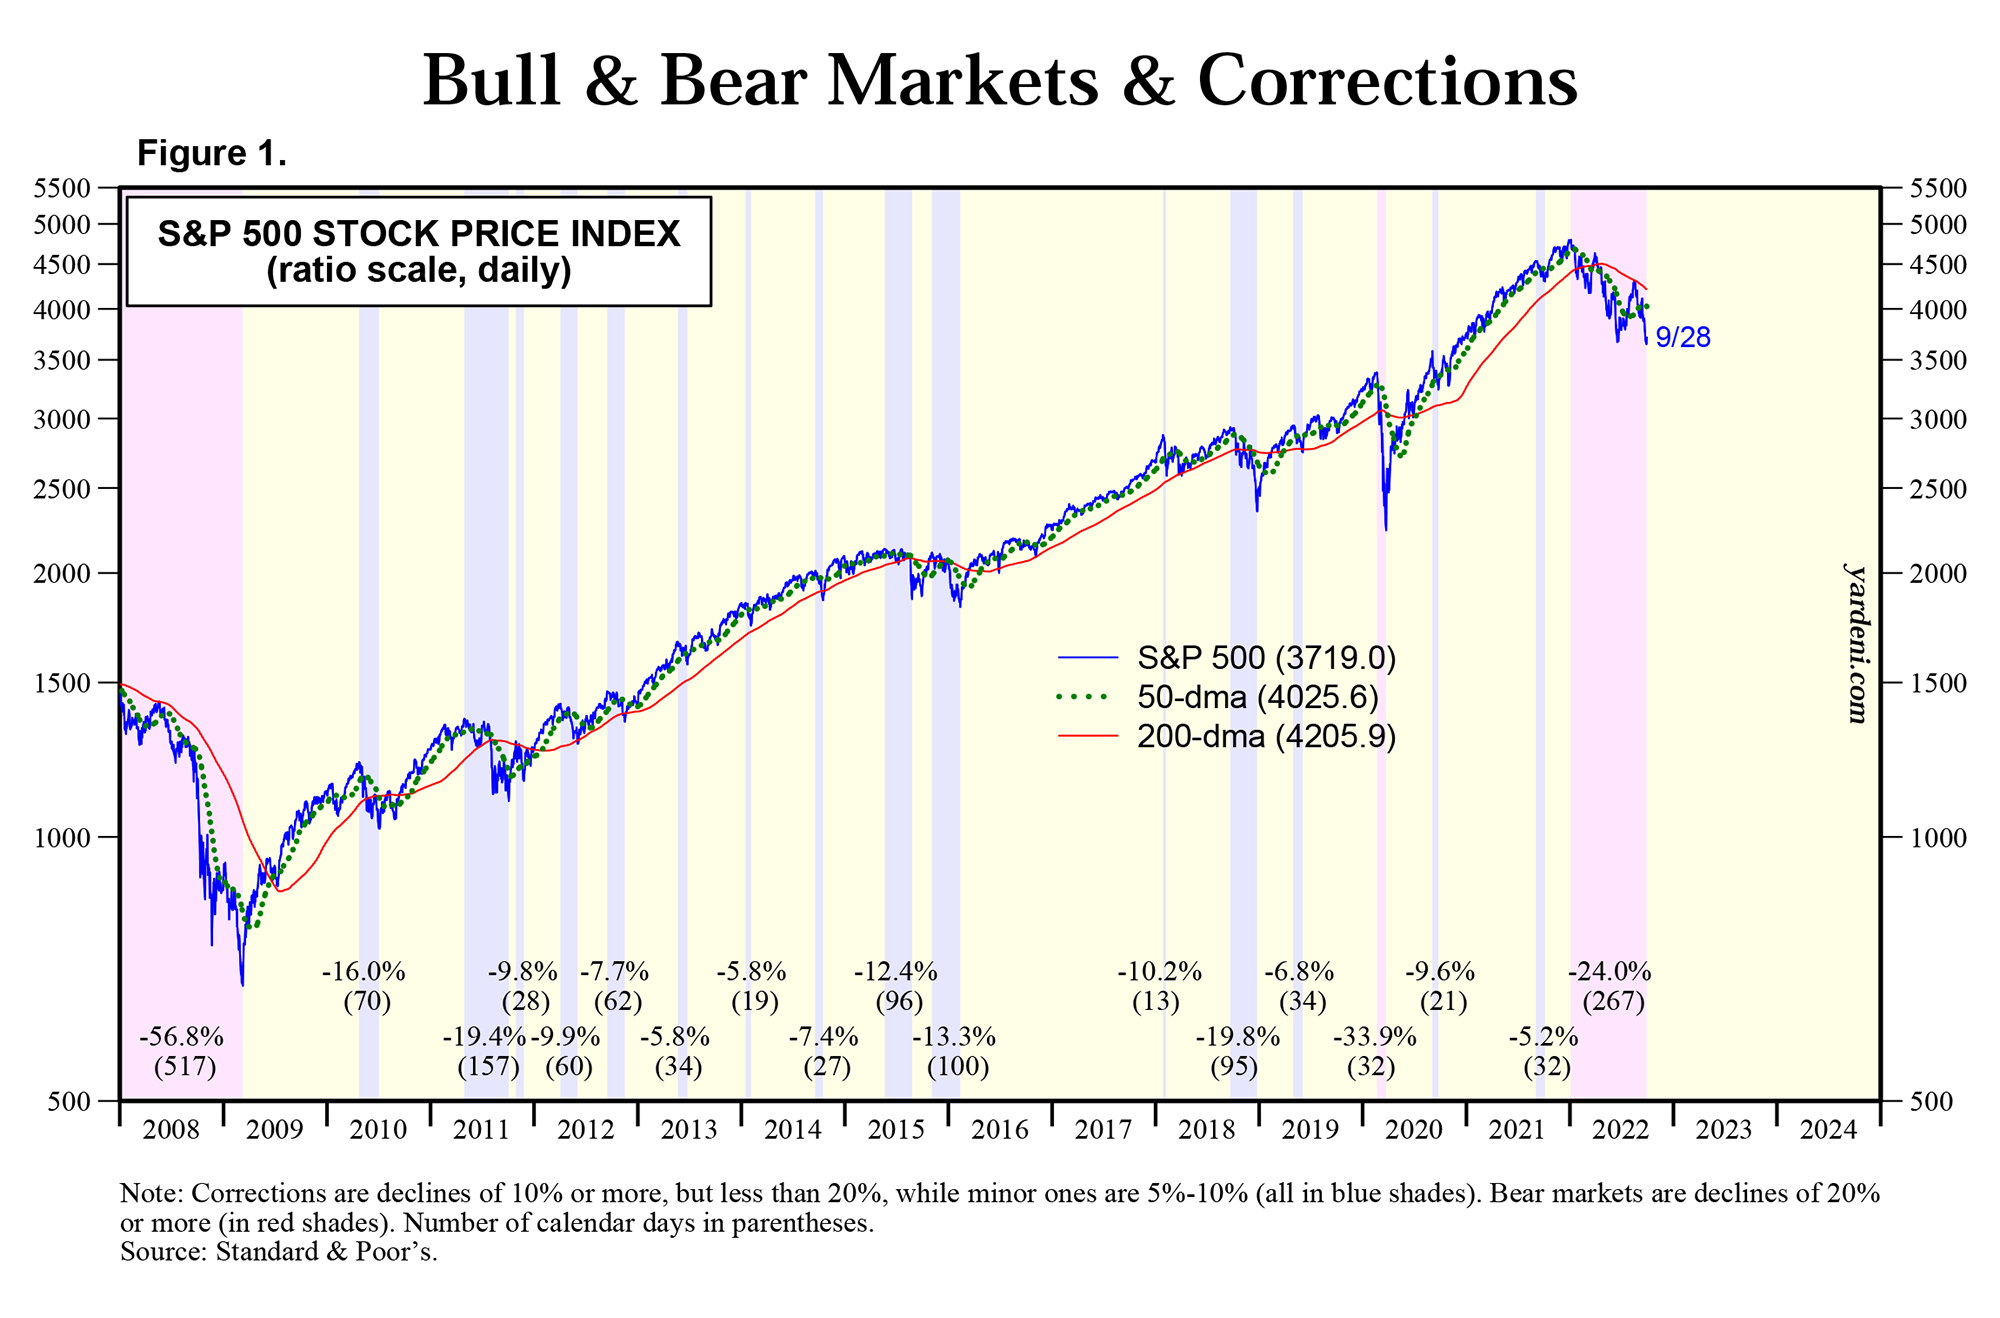 В кризисы 2008 и 2020 годов S&P 500 испытывал падения свыше 20% (розовый фон) — так называемые медвежьи рынки. После кризисов начинался деловой цикл, экономика развивалась и S&P 500 вступал в затяжную фазу роста, хотя периодически случались коррекции (голубой фон на графике). Числа под графиком показывают, на сколько процентов падал индекс, числа в скобках — сколько дней длилась просадка. Источник: yardeni.com